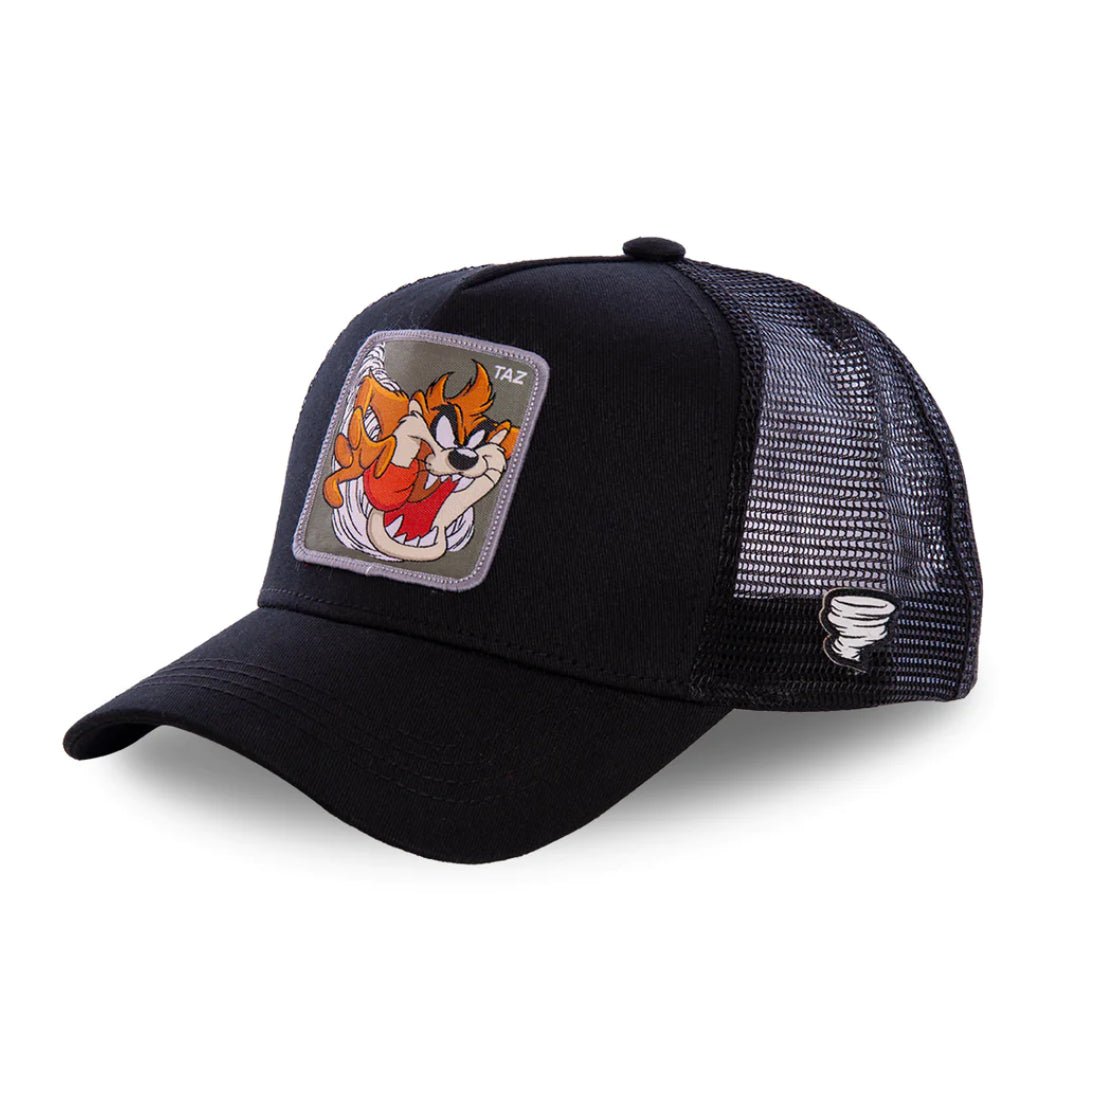 Queue Caps Looney Tunes Taz Cap - Black - قبعة - Store 974 | ستور ٩٧٤